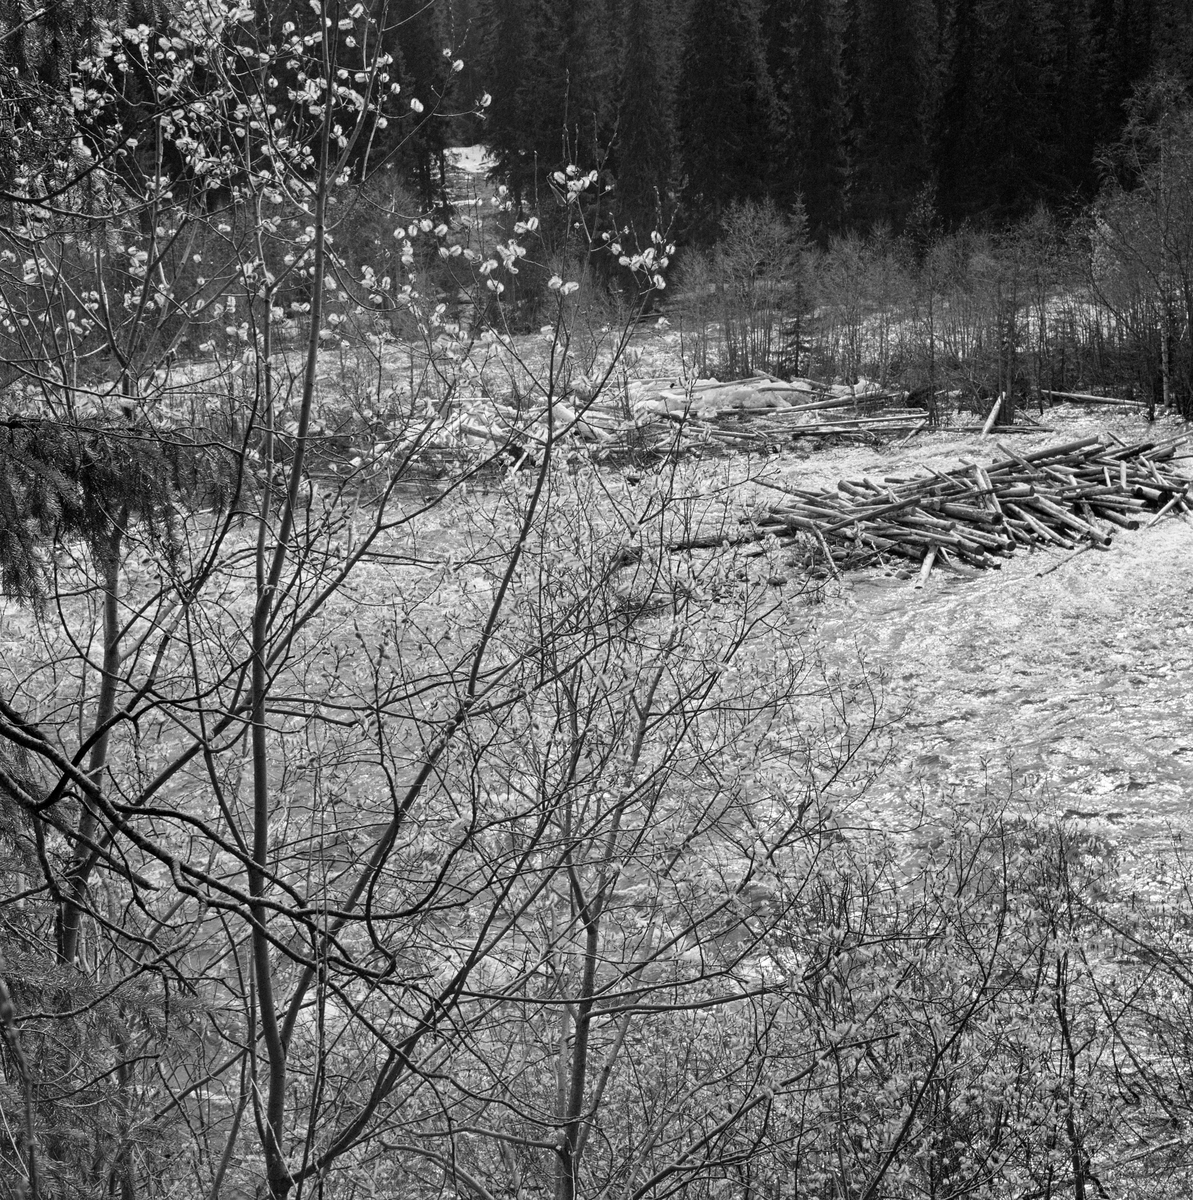 Tømmer i elva Åsta ved Åstvollen, Åmot, Hedmark. Åsta er stri, og når damvannet fra Kvarstaddammen tok slutt satte tømmeret seg fast på de grunne partiene av elva. Åstdalen. Åstadalen. Tømmervase. Seljetrær med gåsunger i forgrunnen.